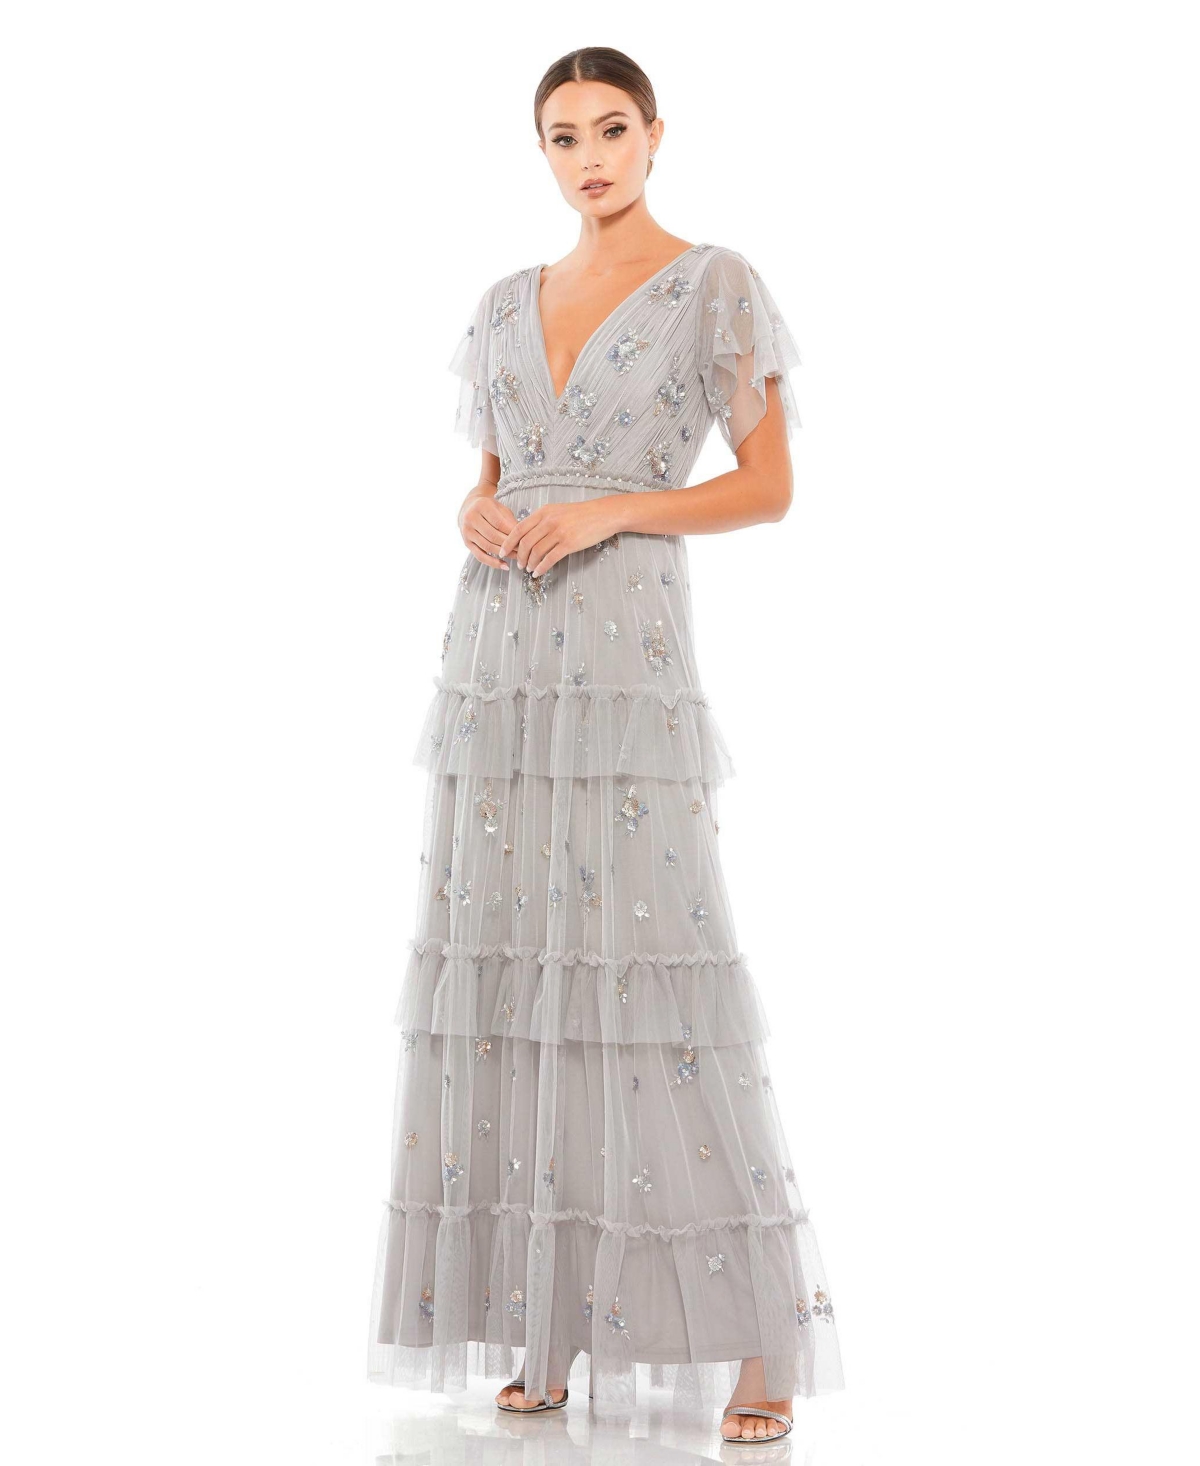 Vintage Evening Dresses, Vintage Formal Dresses Womens Ruffle Tiered Embellished Flutter Sleeve Gown - Platinum $598.00 AT vintagedancer.com